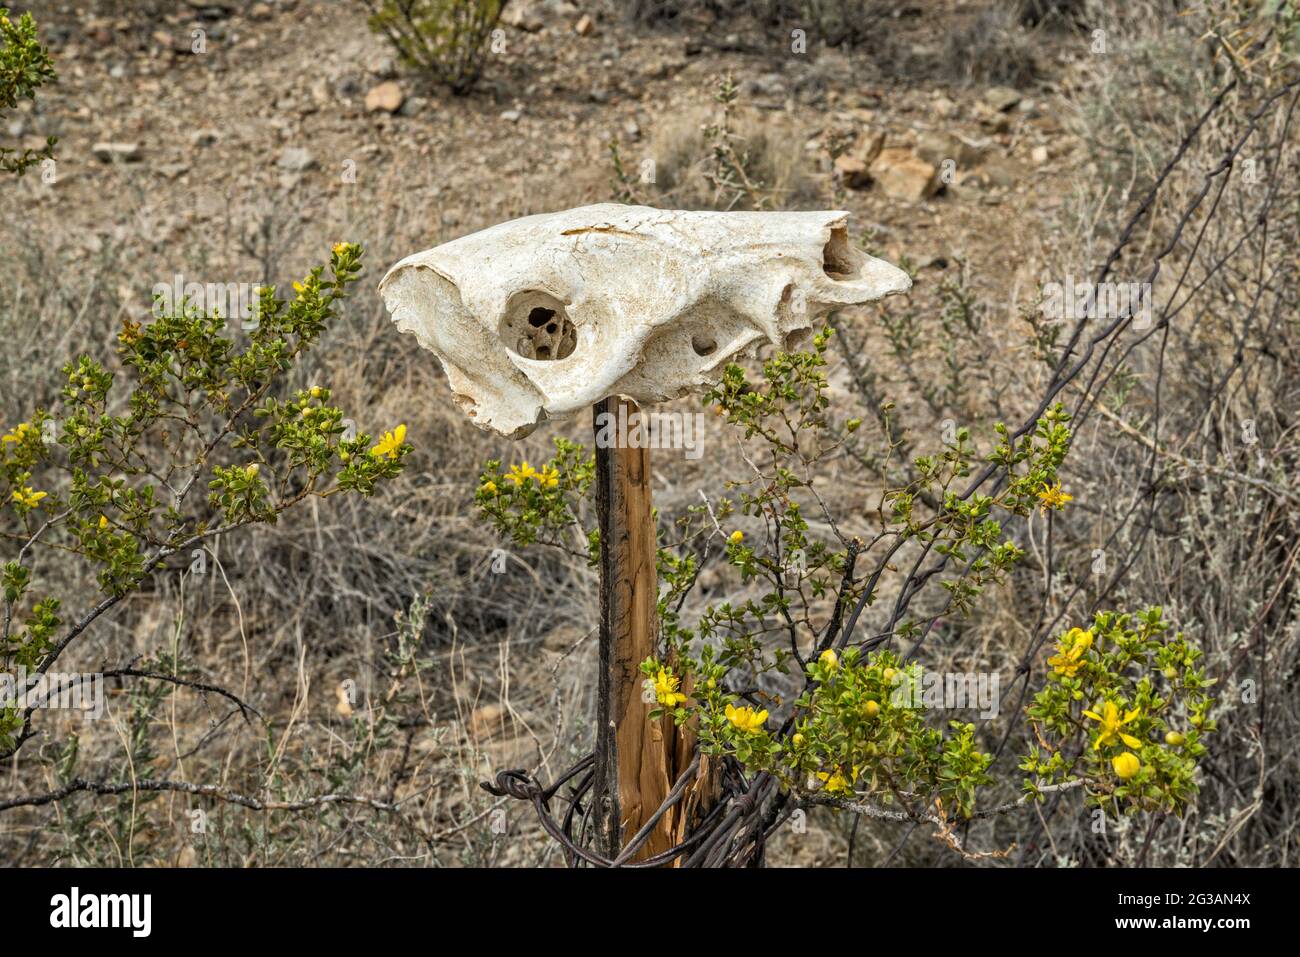 Cráneo animal, arbusto de creosota en flor, en el campamento de McGuirks Tanks, área de El Solitario, Parque Estatal Big Bend Ranch, Texas, Estados Unidos Foto de stock